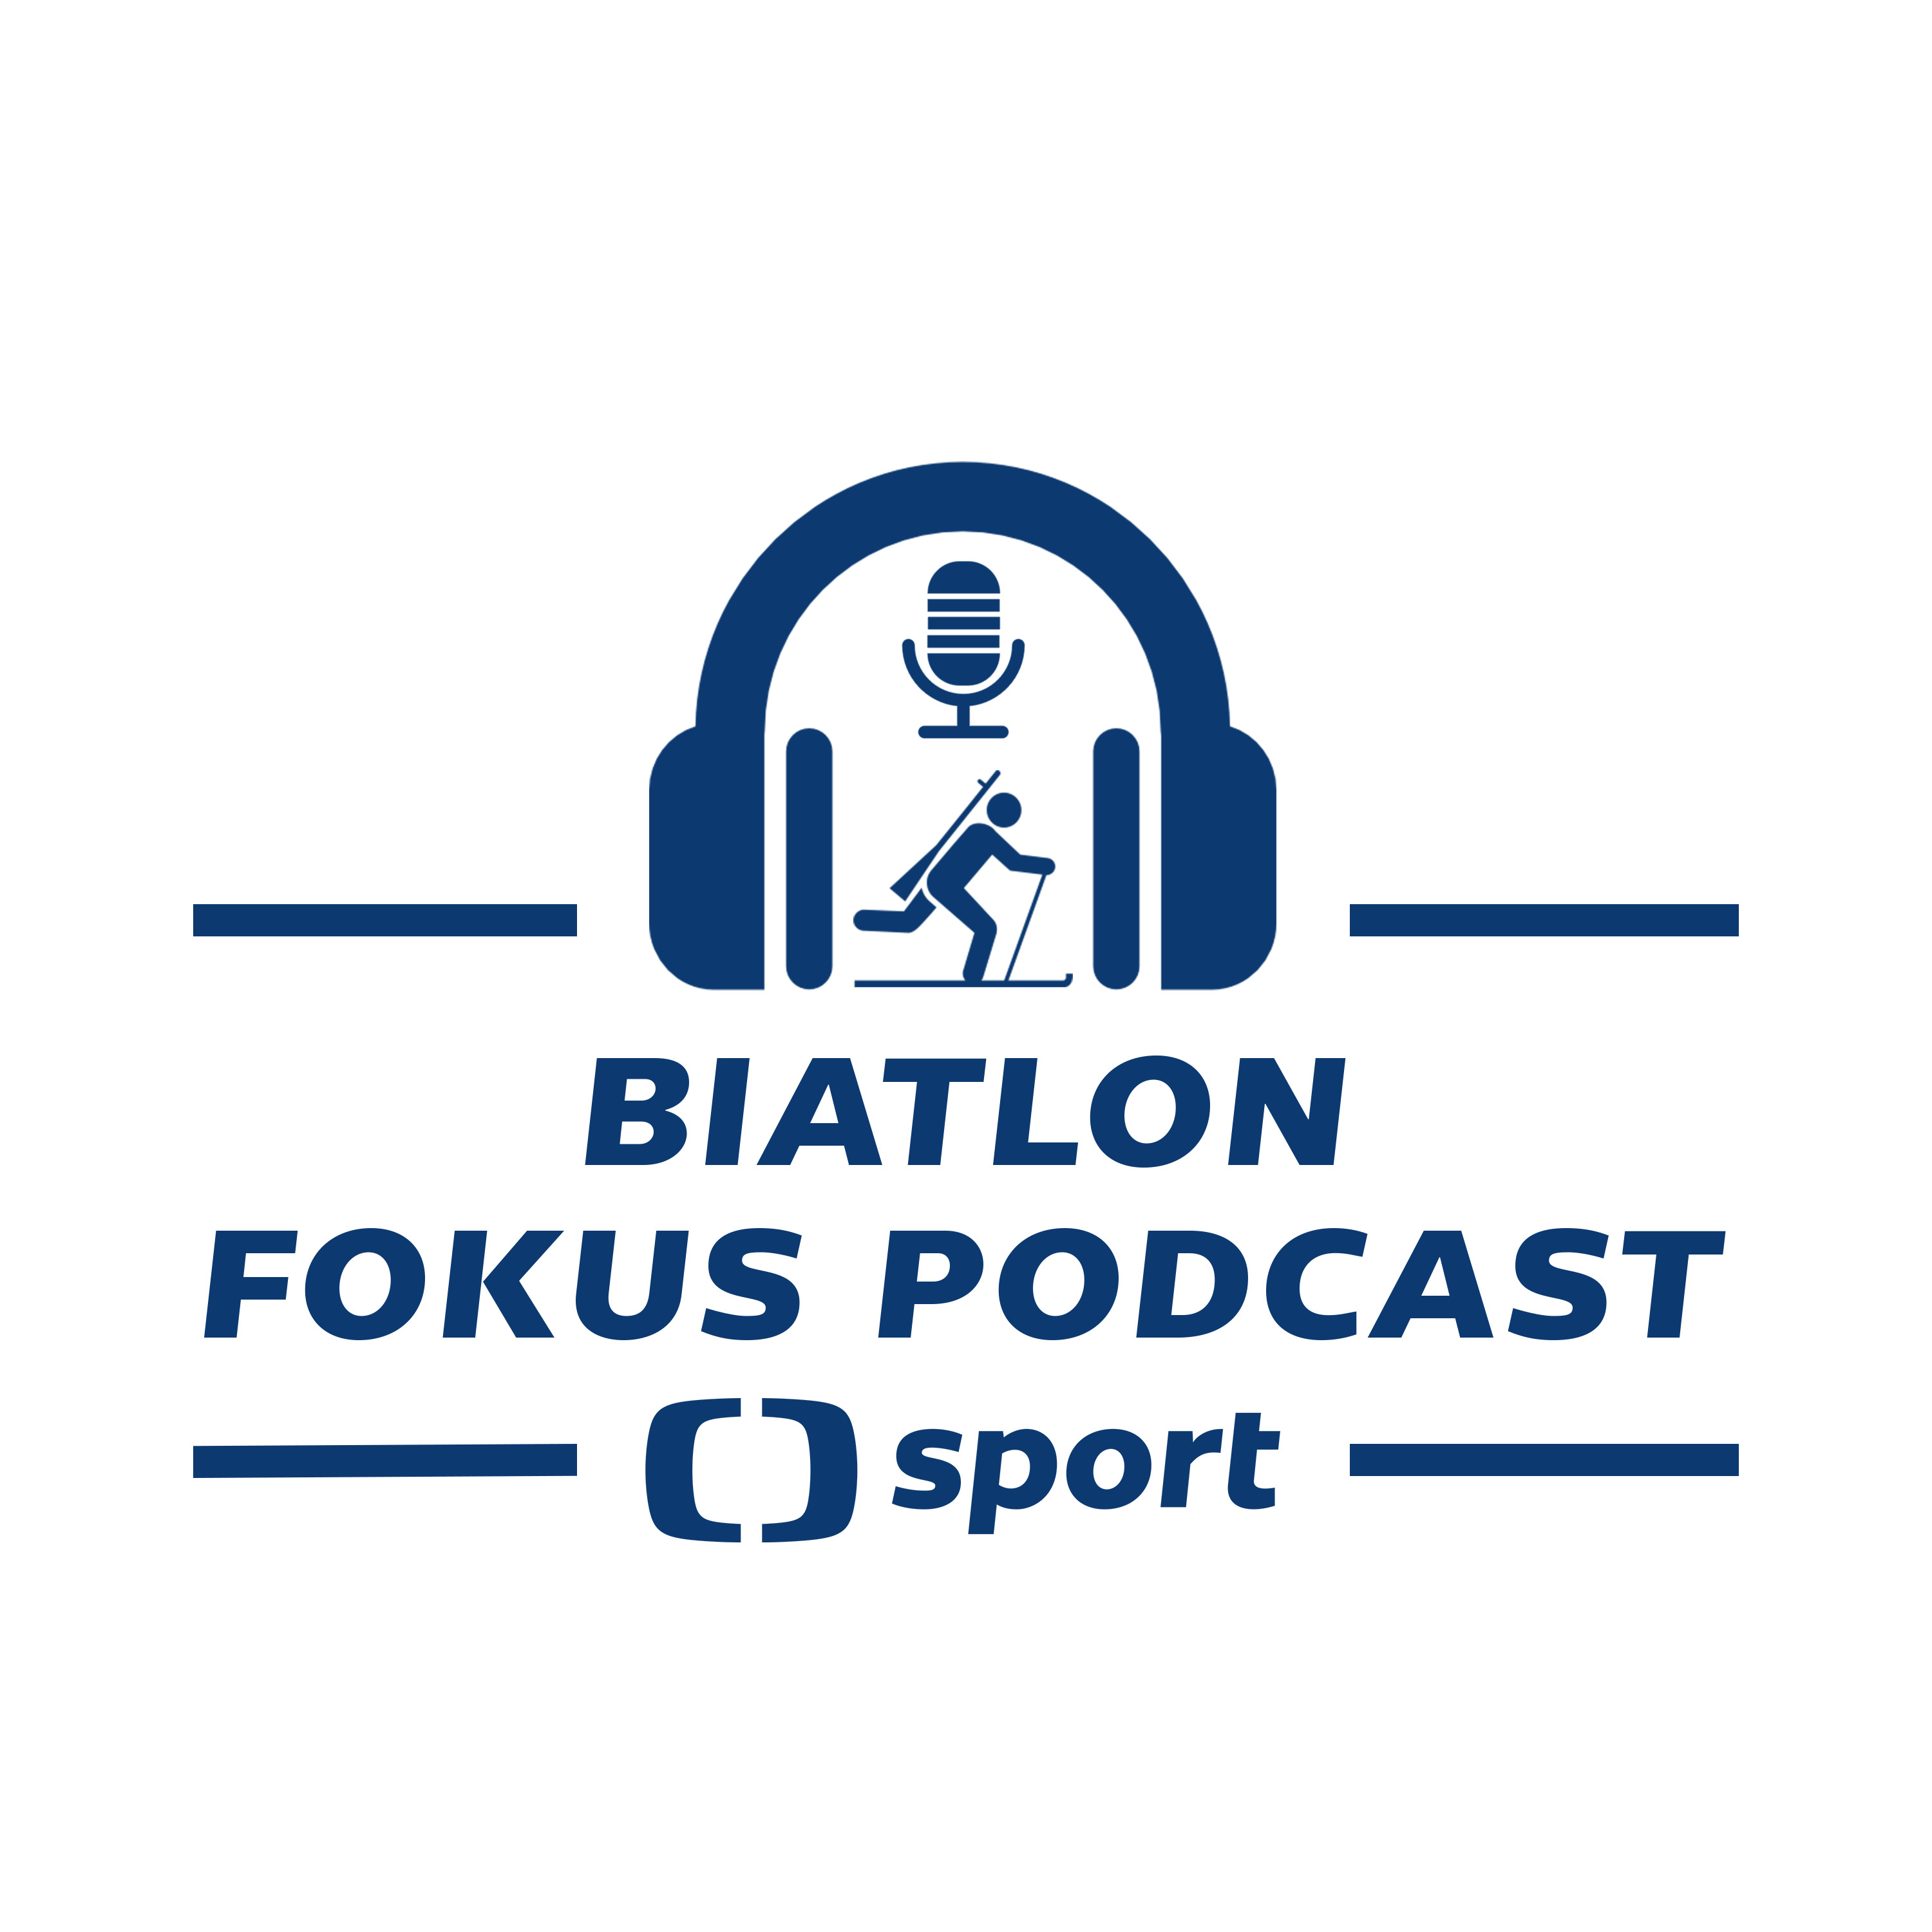 Biatlon fokus podcast: Tenhle sport vás nikdy nenudí, stále přináší nové zápletky, říká komentátor Jílek